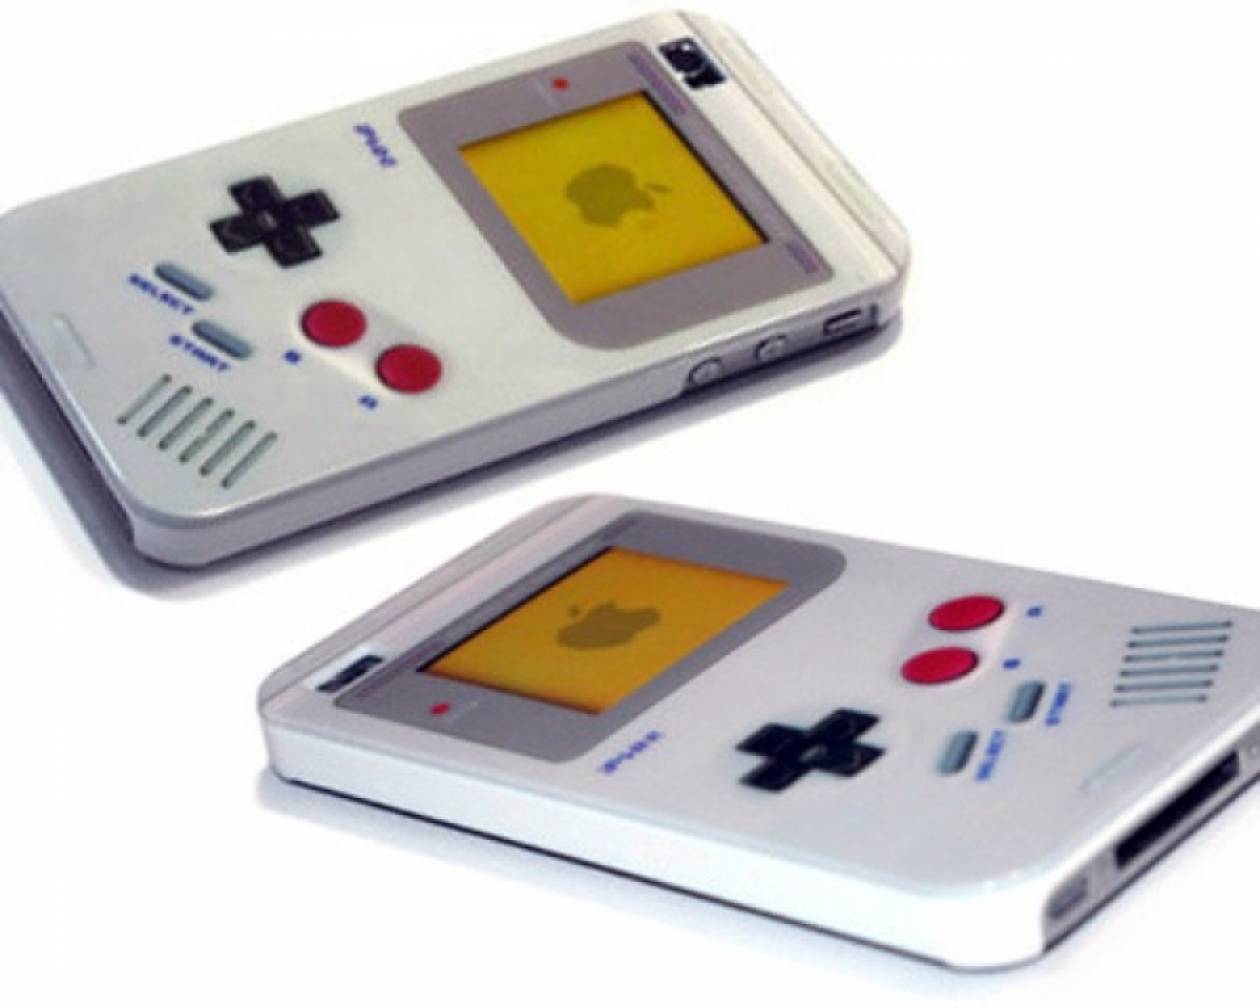 Κάντε το iPhone σας να μοιάζει με Game Boy!